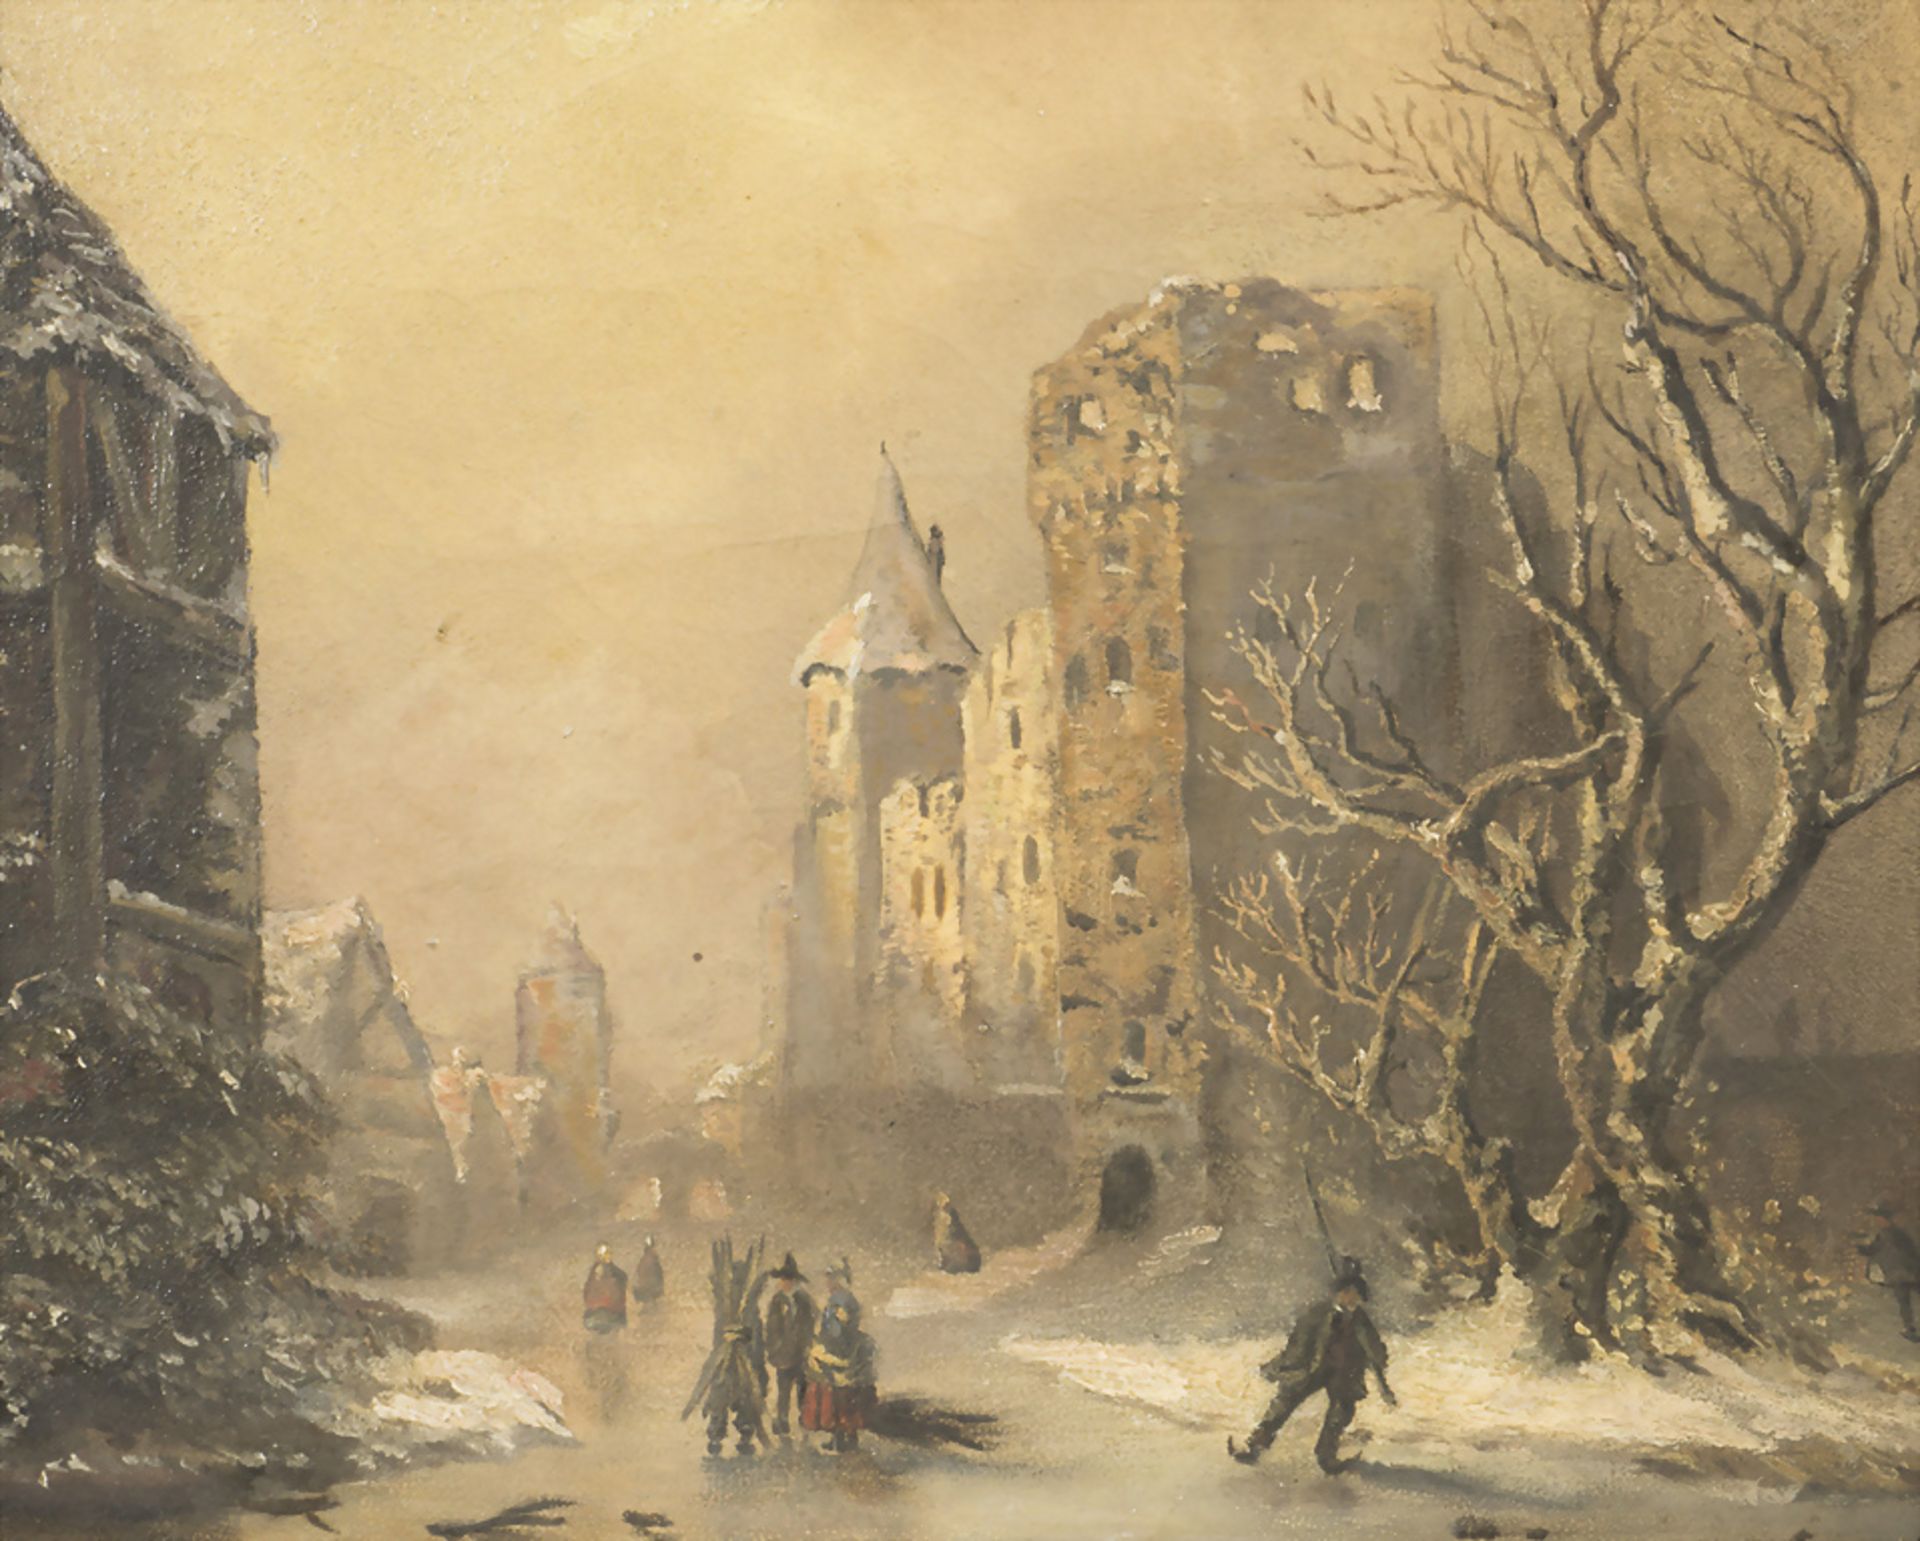 Monogrammist C.B., 'Dorf im Winter' / 'A village in wintertime', 1862. - Image 4 of 5